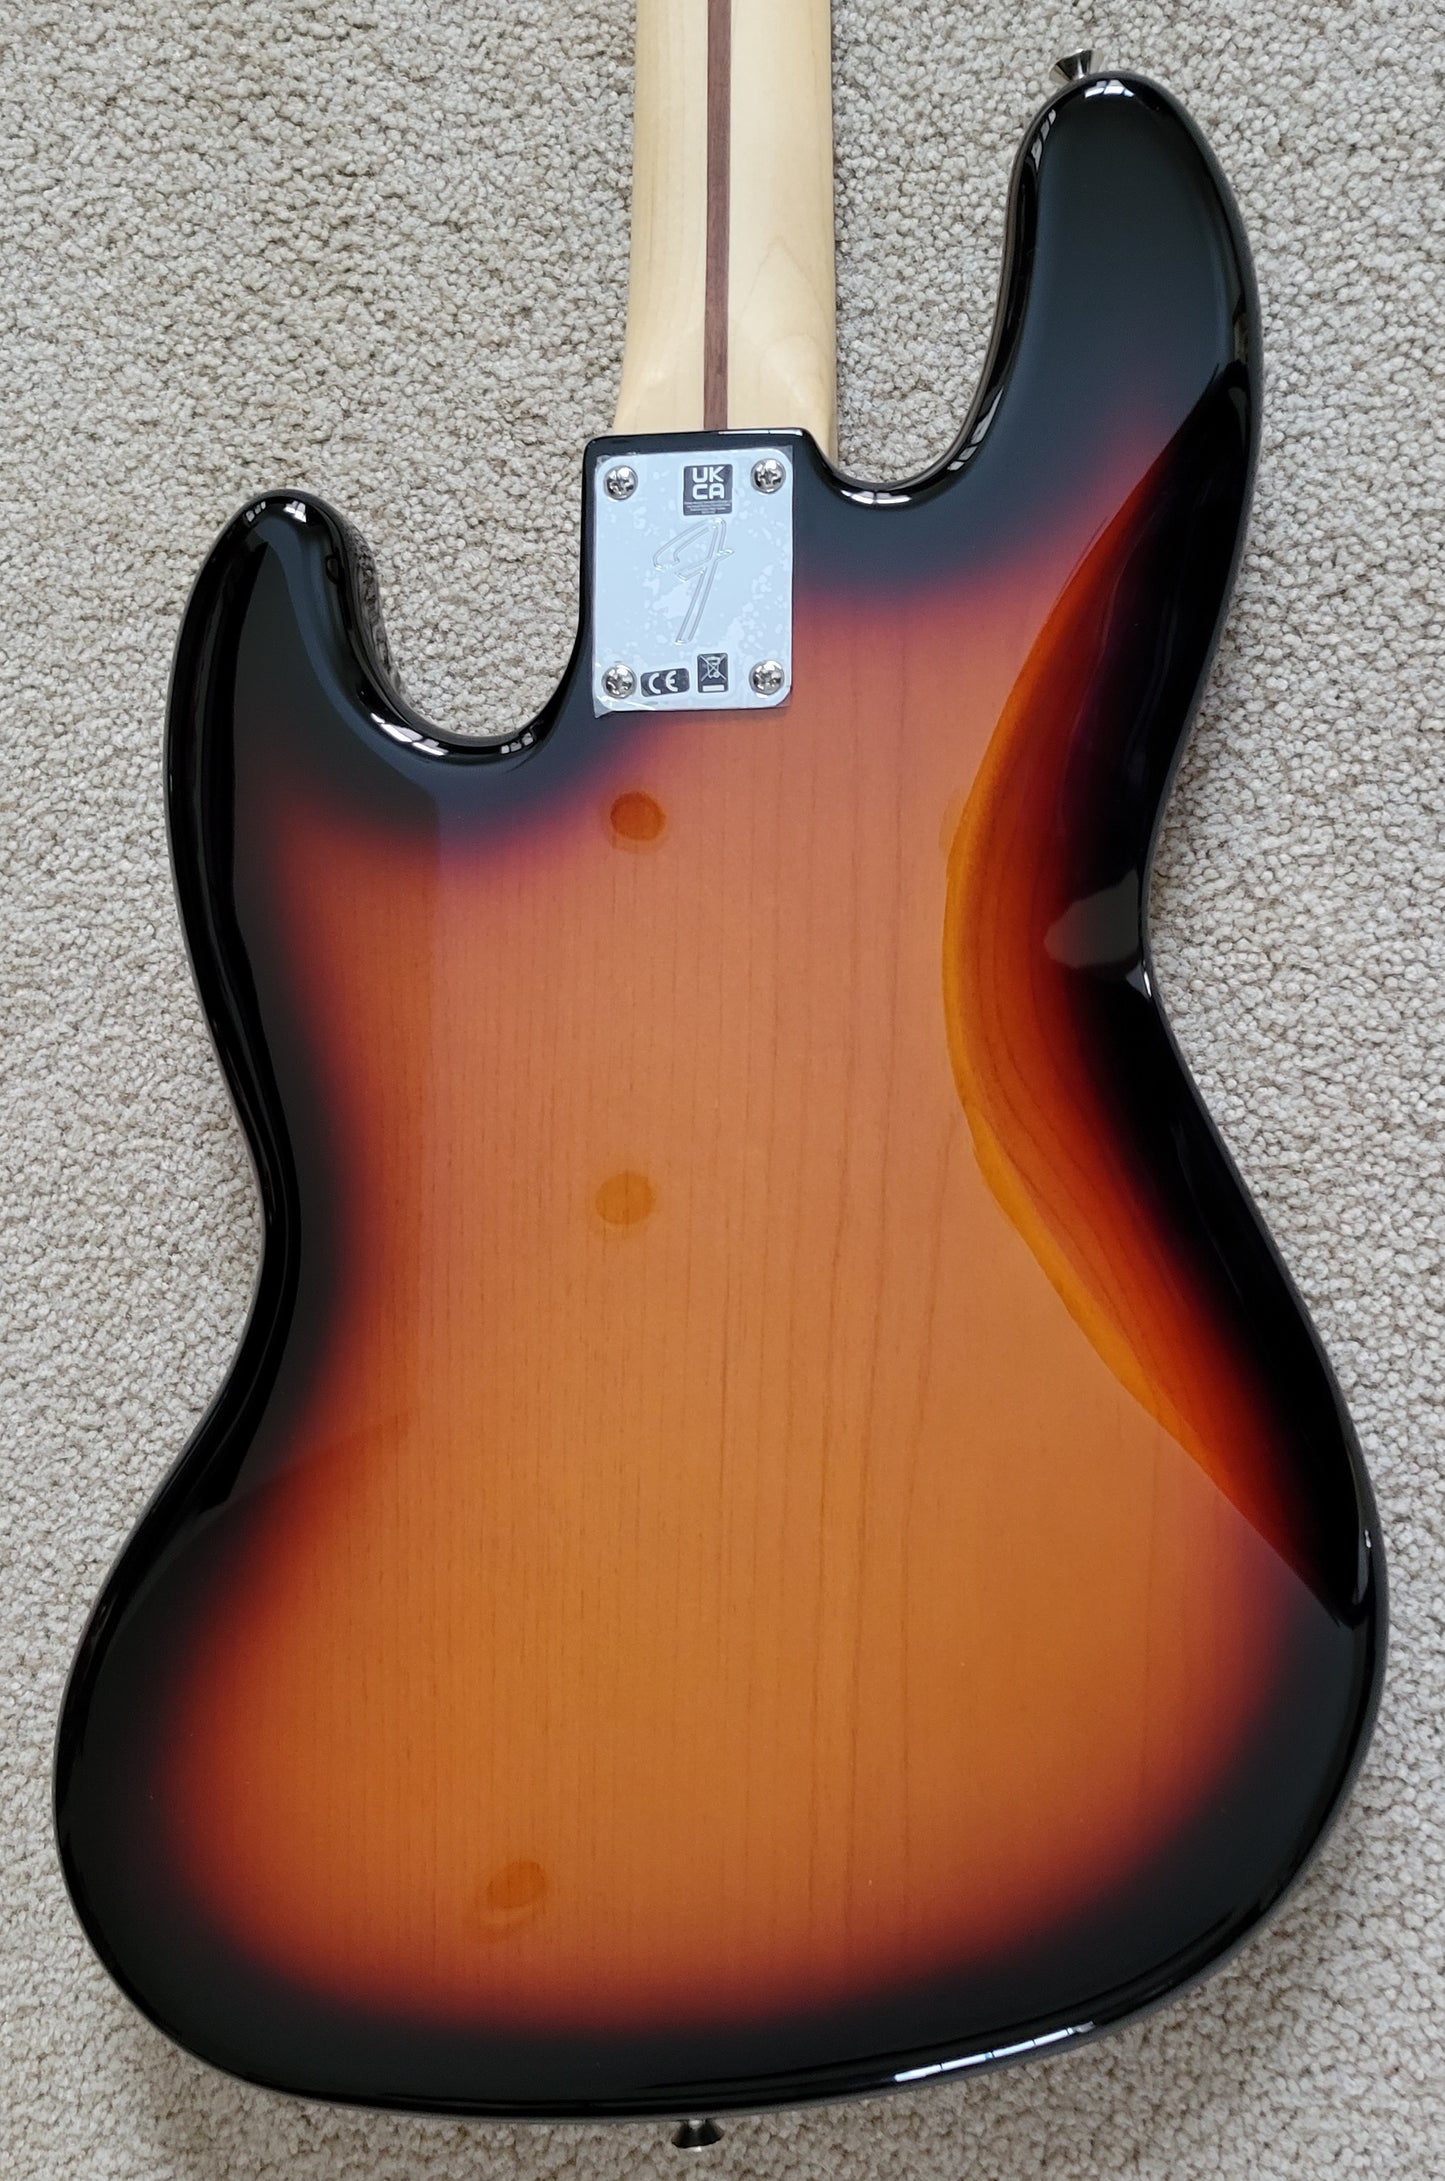 Fender Player Jazz Bass Electric Guitar, 3-Color Sunburst, New Gig Bag